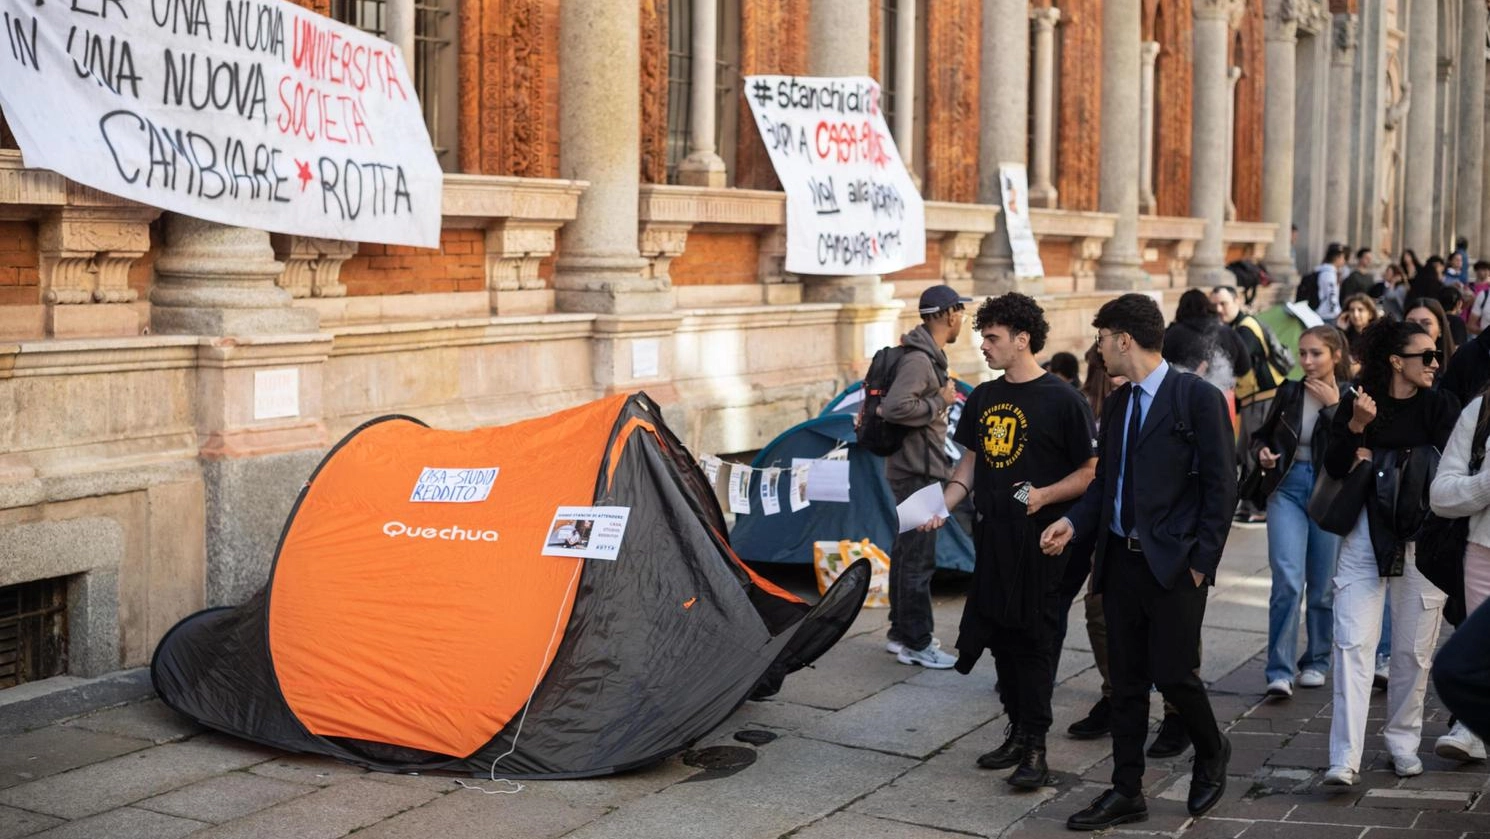 Il tema del carovita per i fuorisede resta caldissimo: la protesta delle tende è ripresa in gran parte delle città universitarie italiane